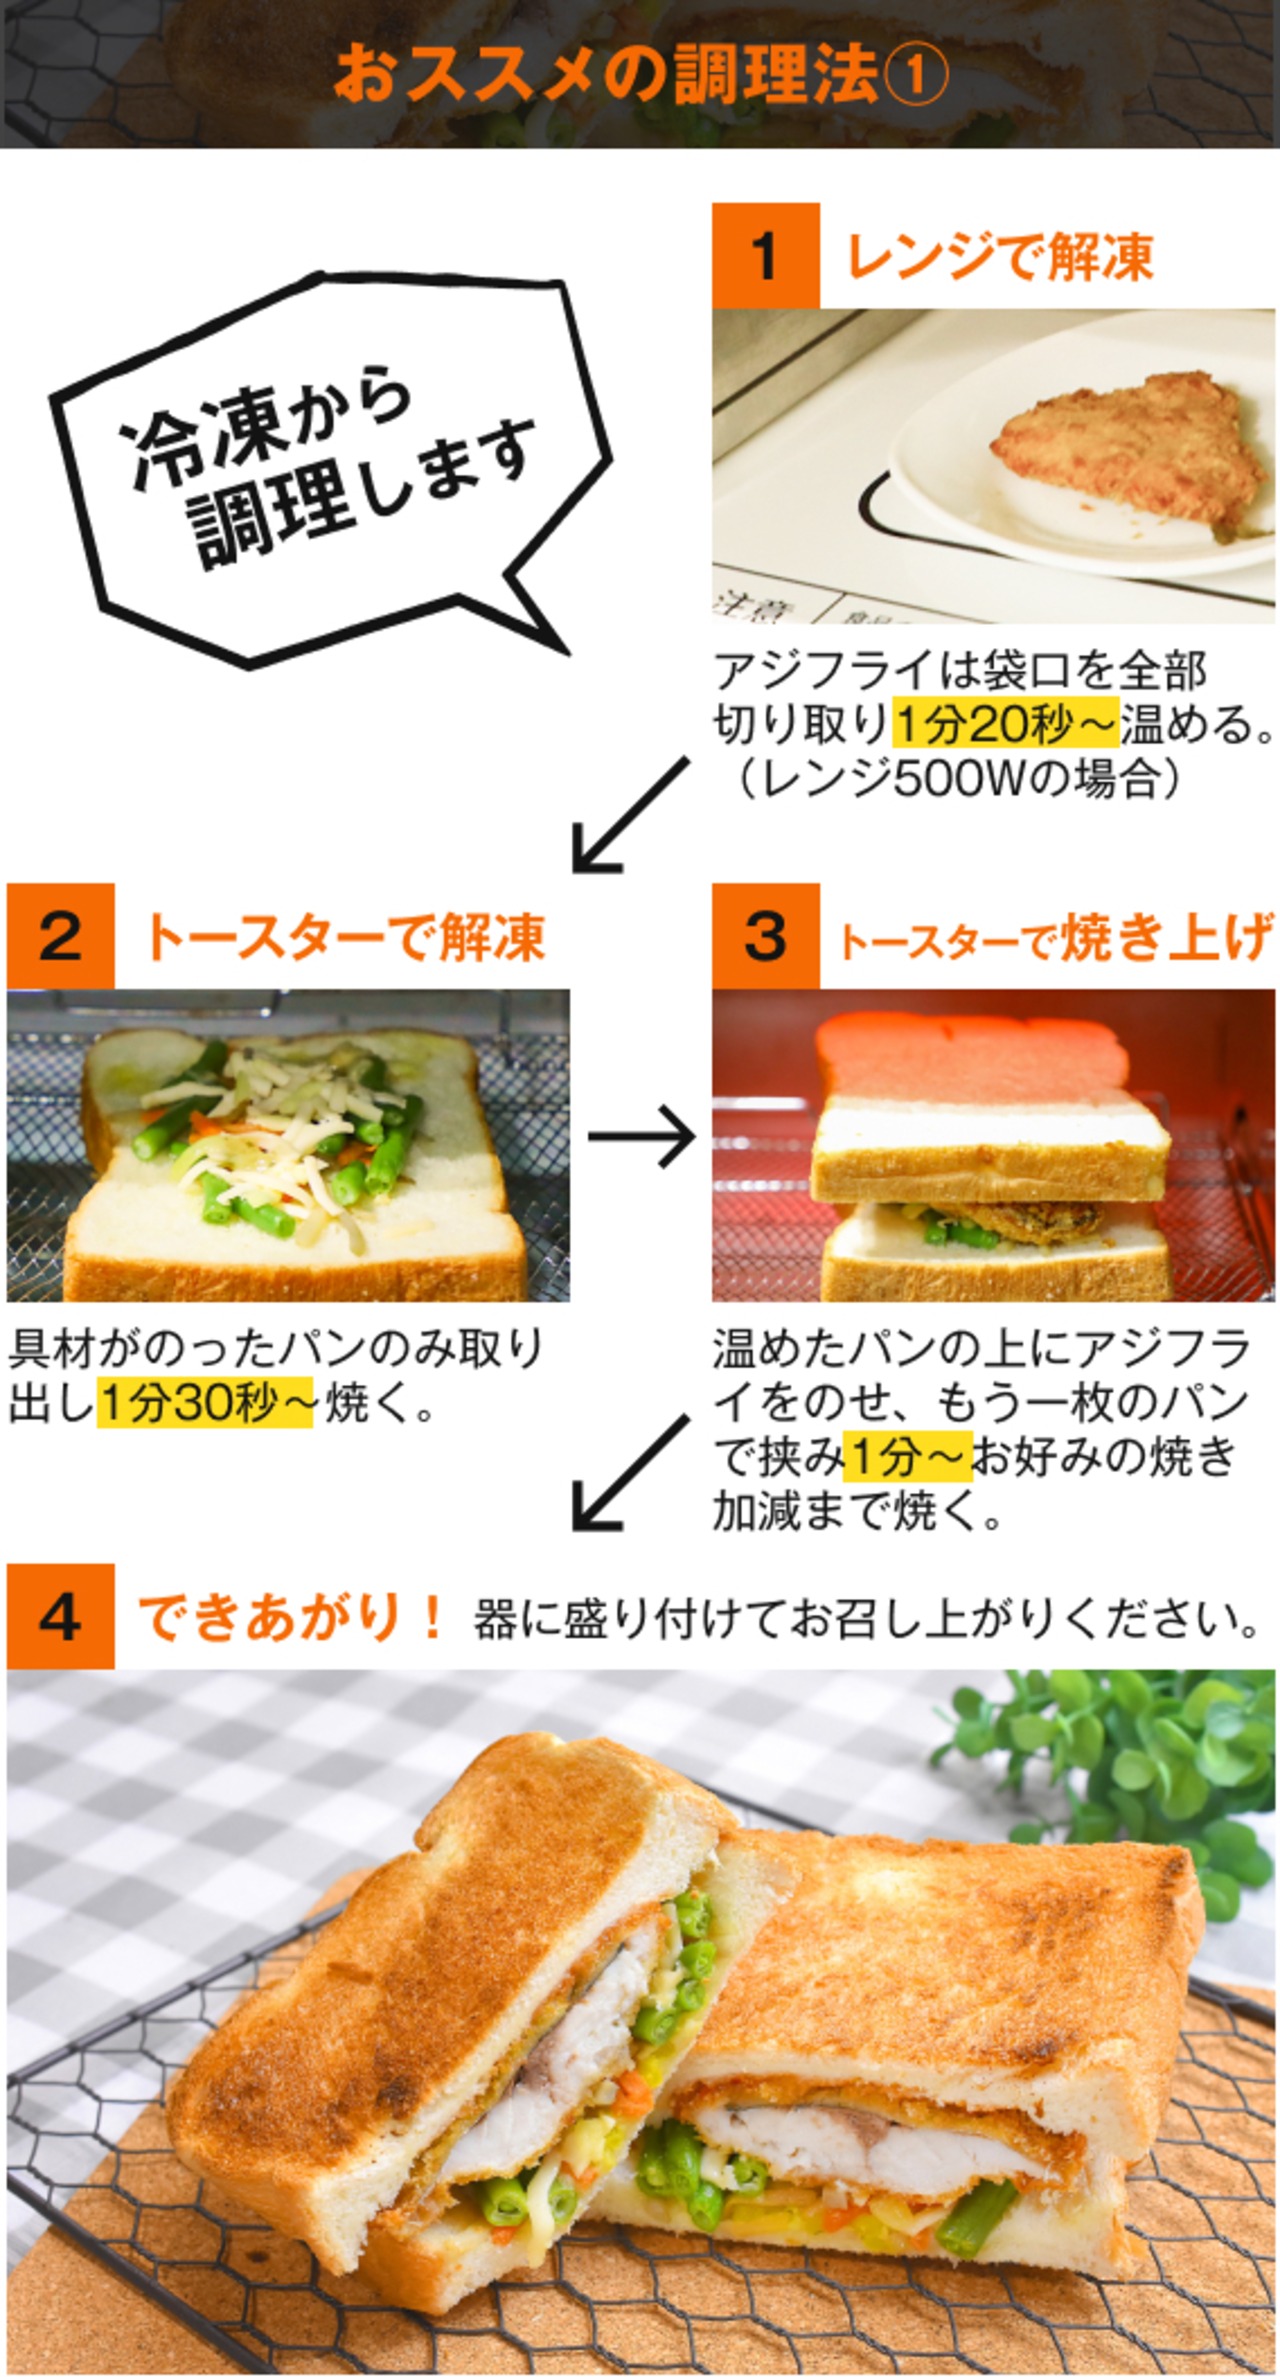 【冷凍食品】特製 松浦アジフライサンド ～アジフライの聖地～松浦アジフライ憲章承認商品